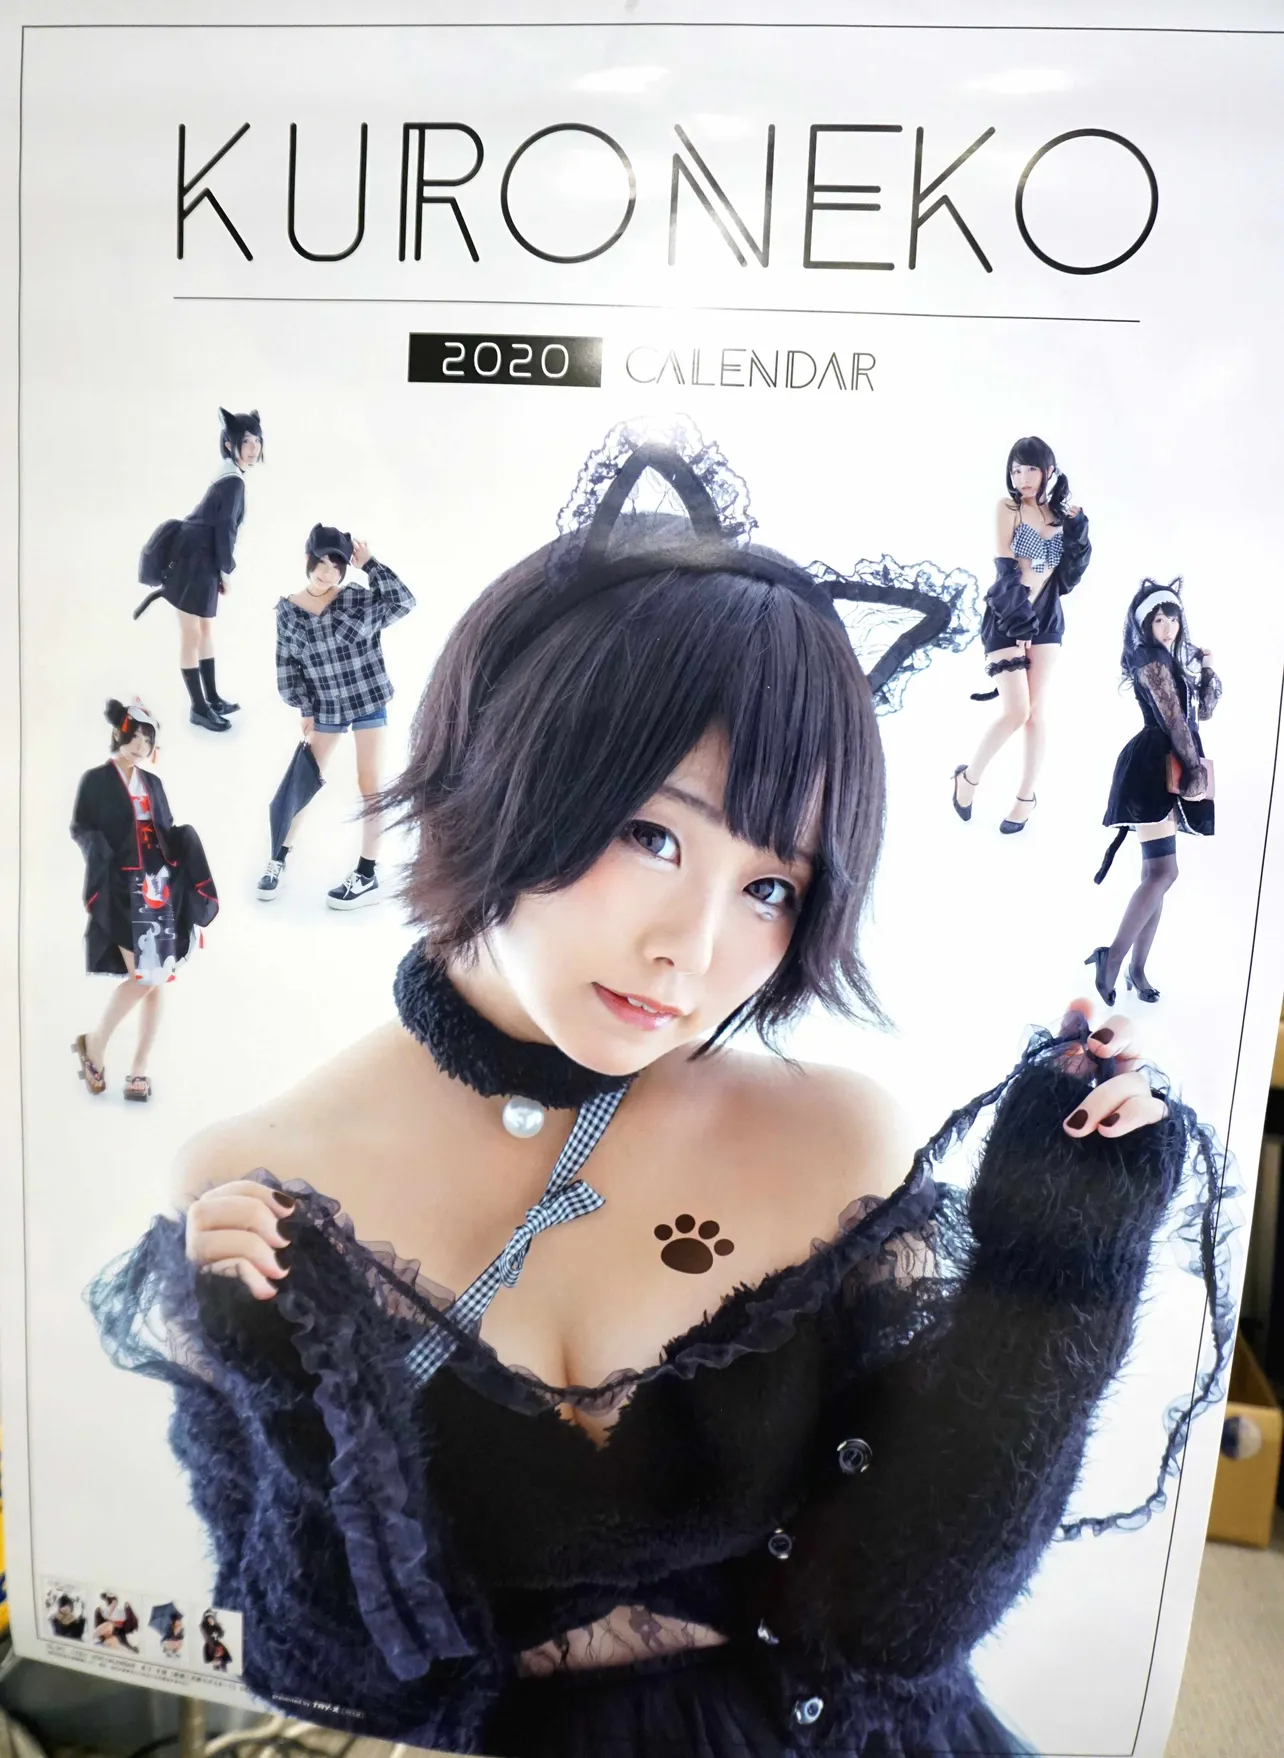 「くろねこ」2020年カレンダーは2700円(税抜)で発売中